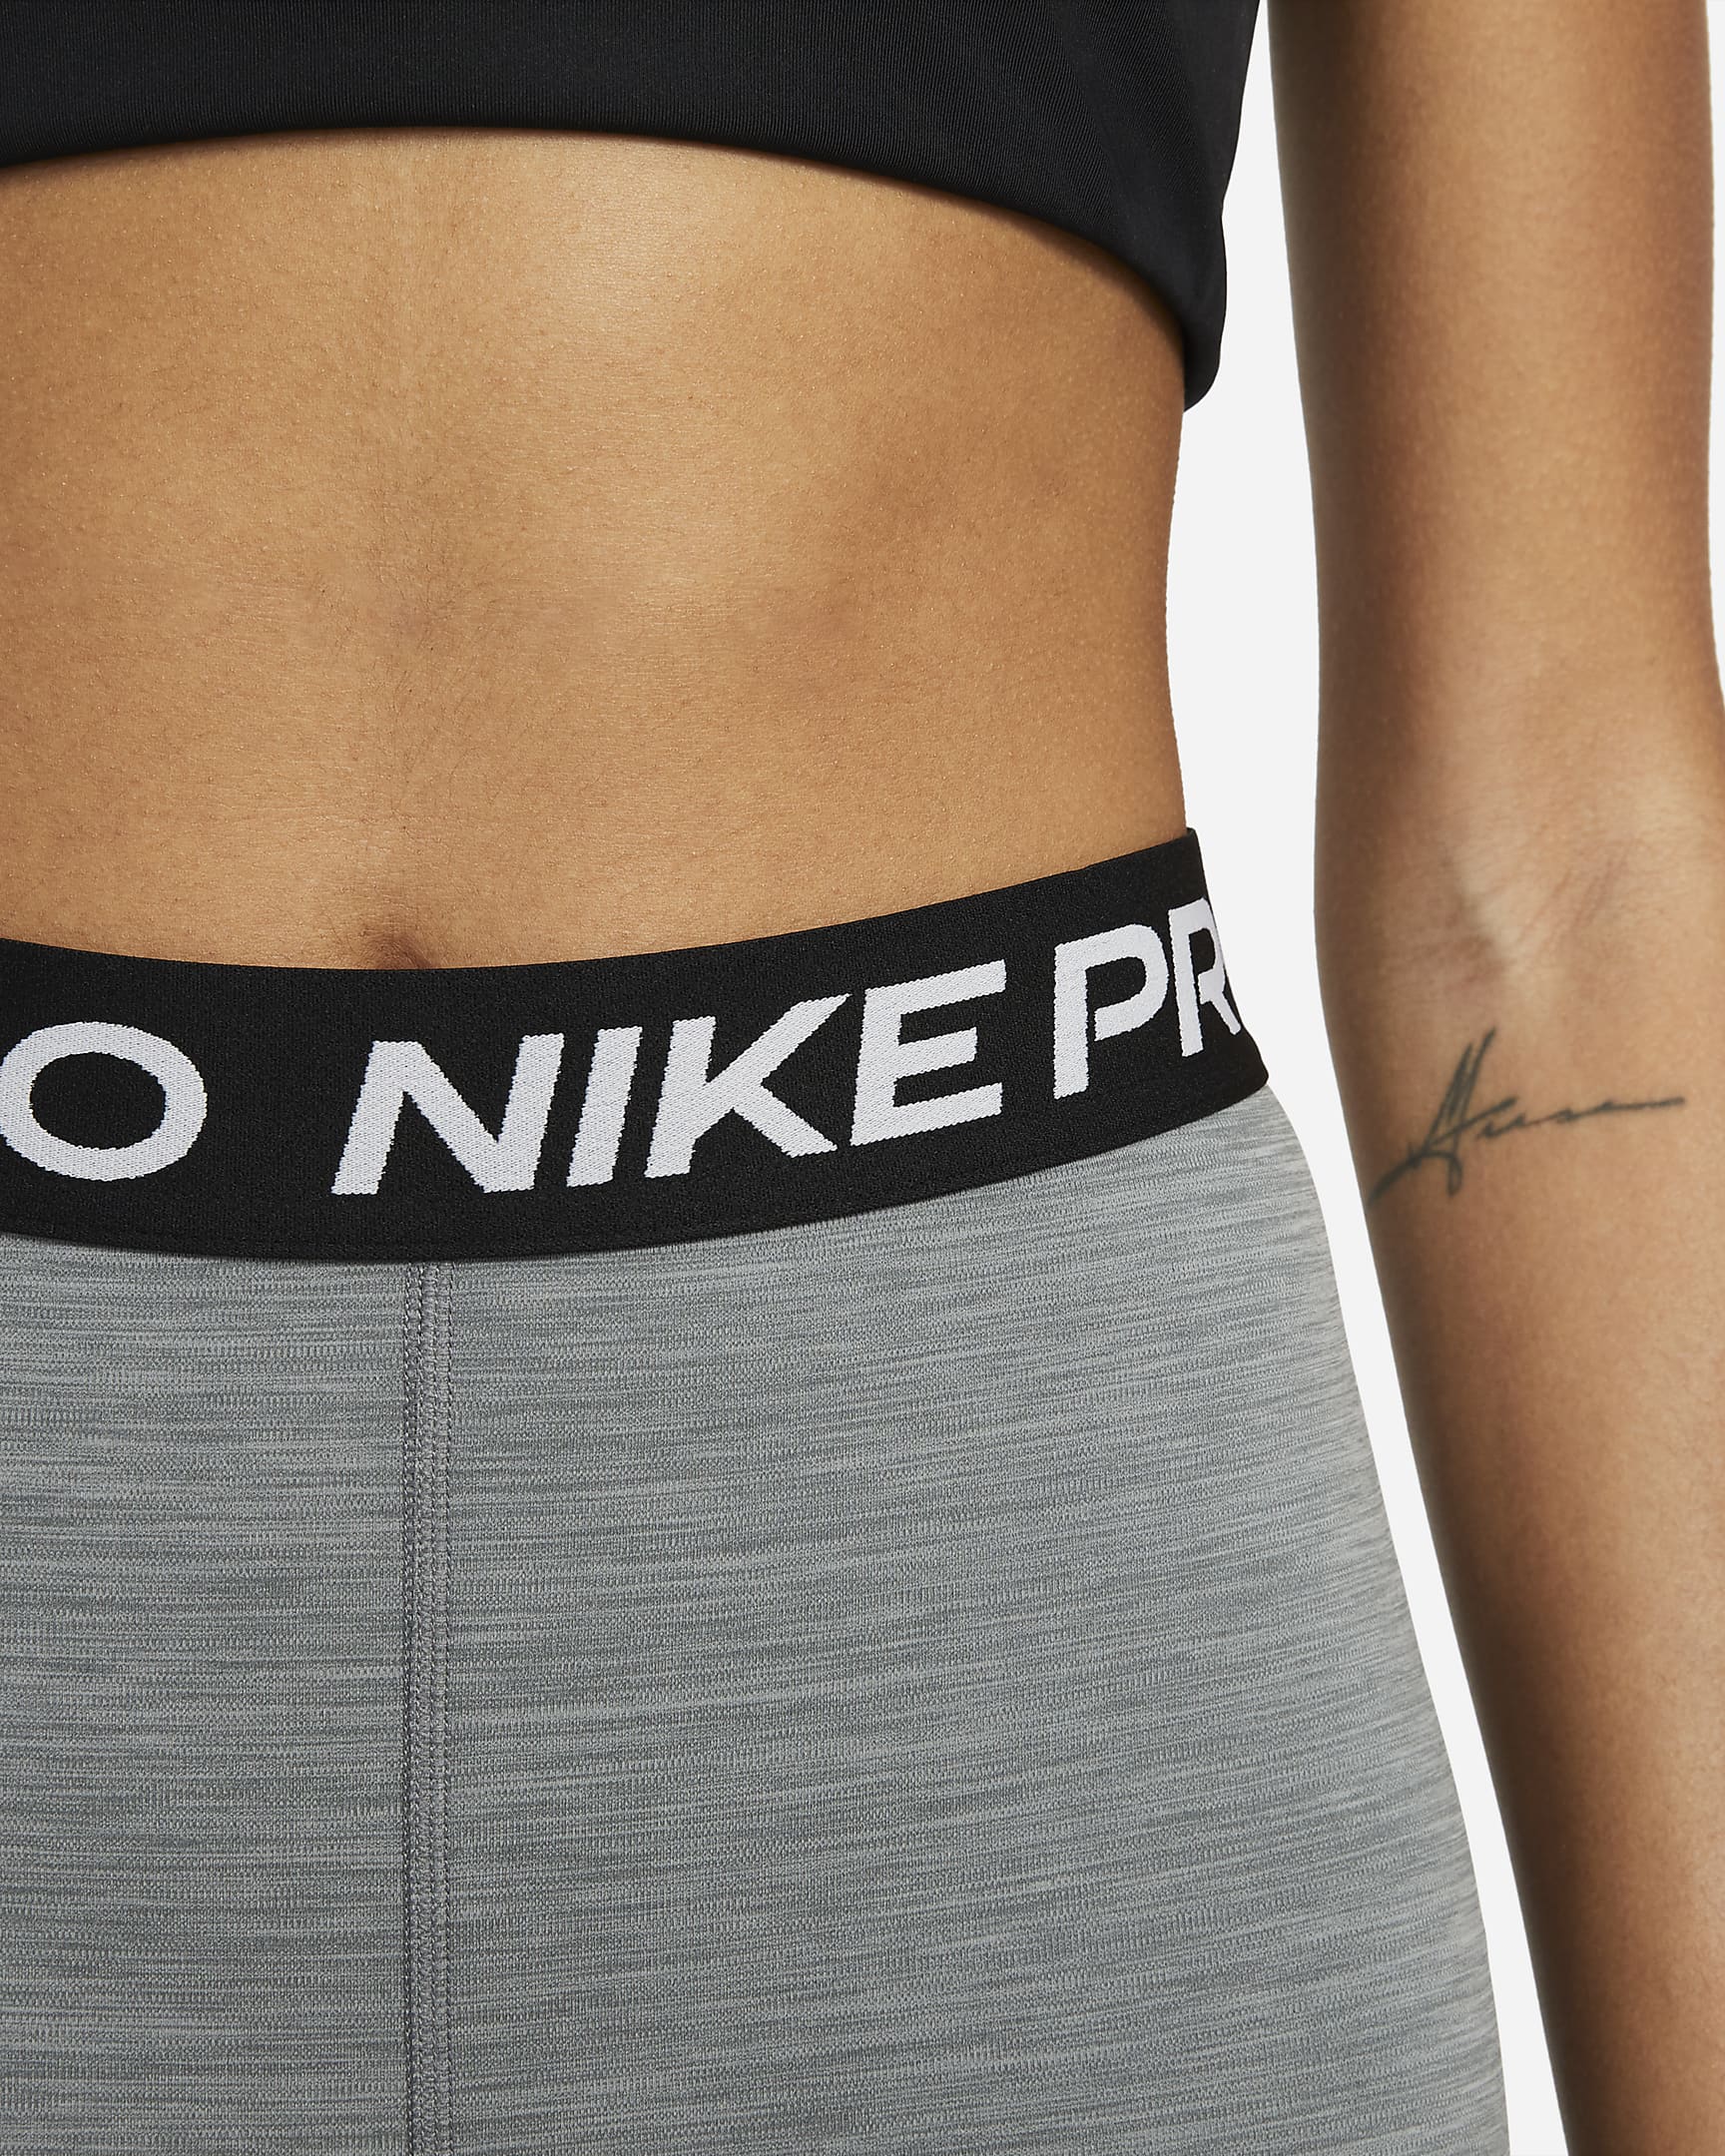 Shorts de 18 cm de tiro alto para mujer Nike Pro 365. Nike.com